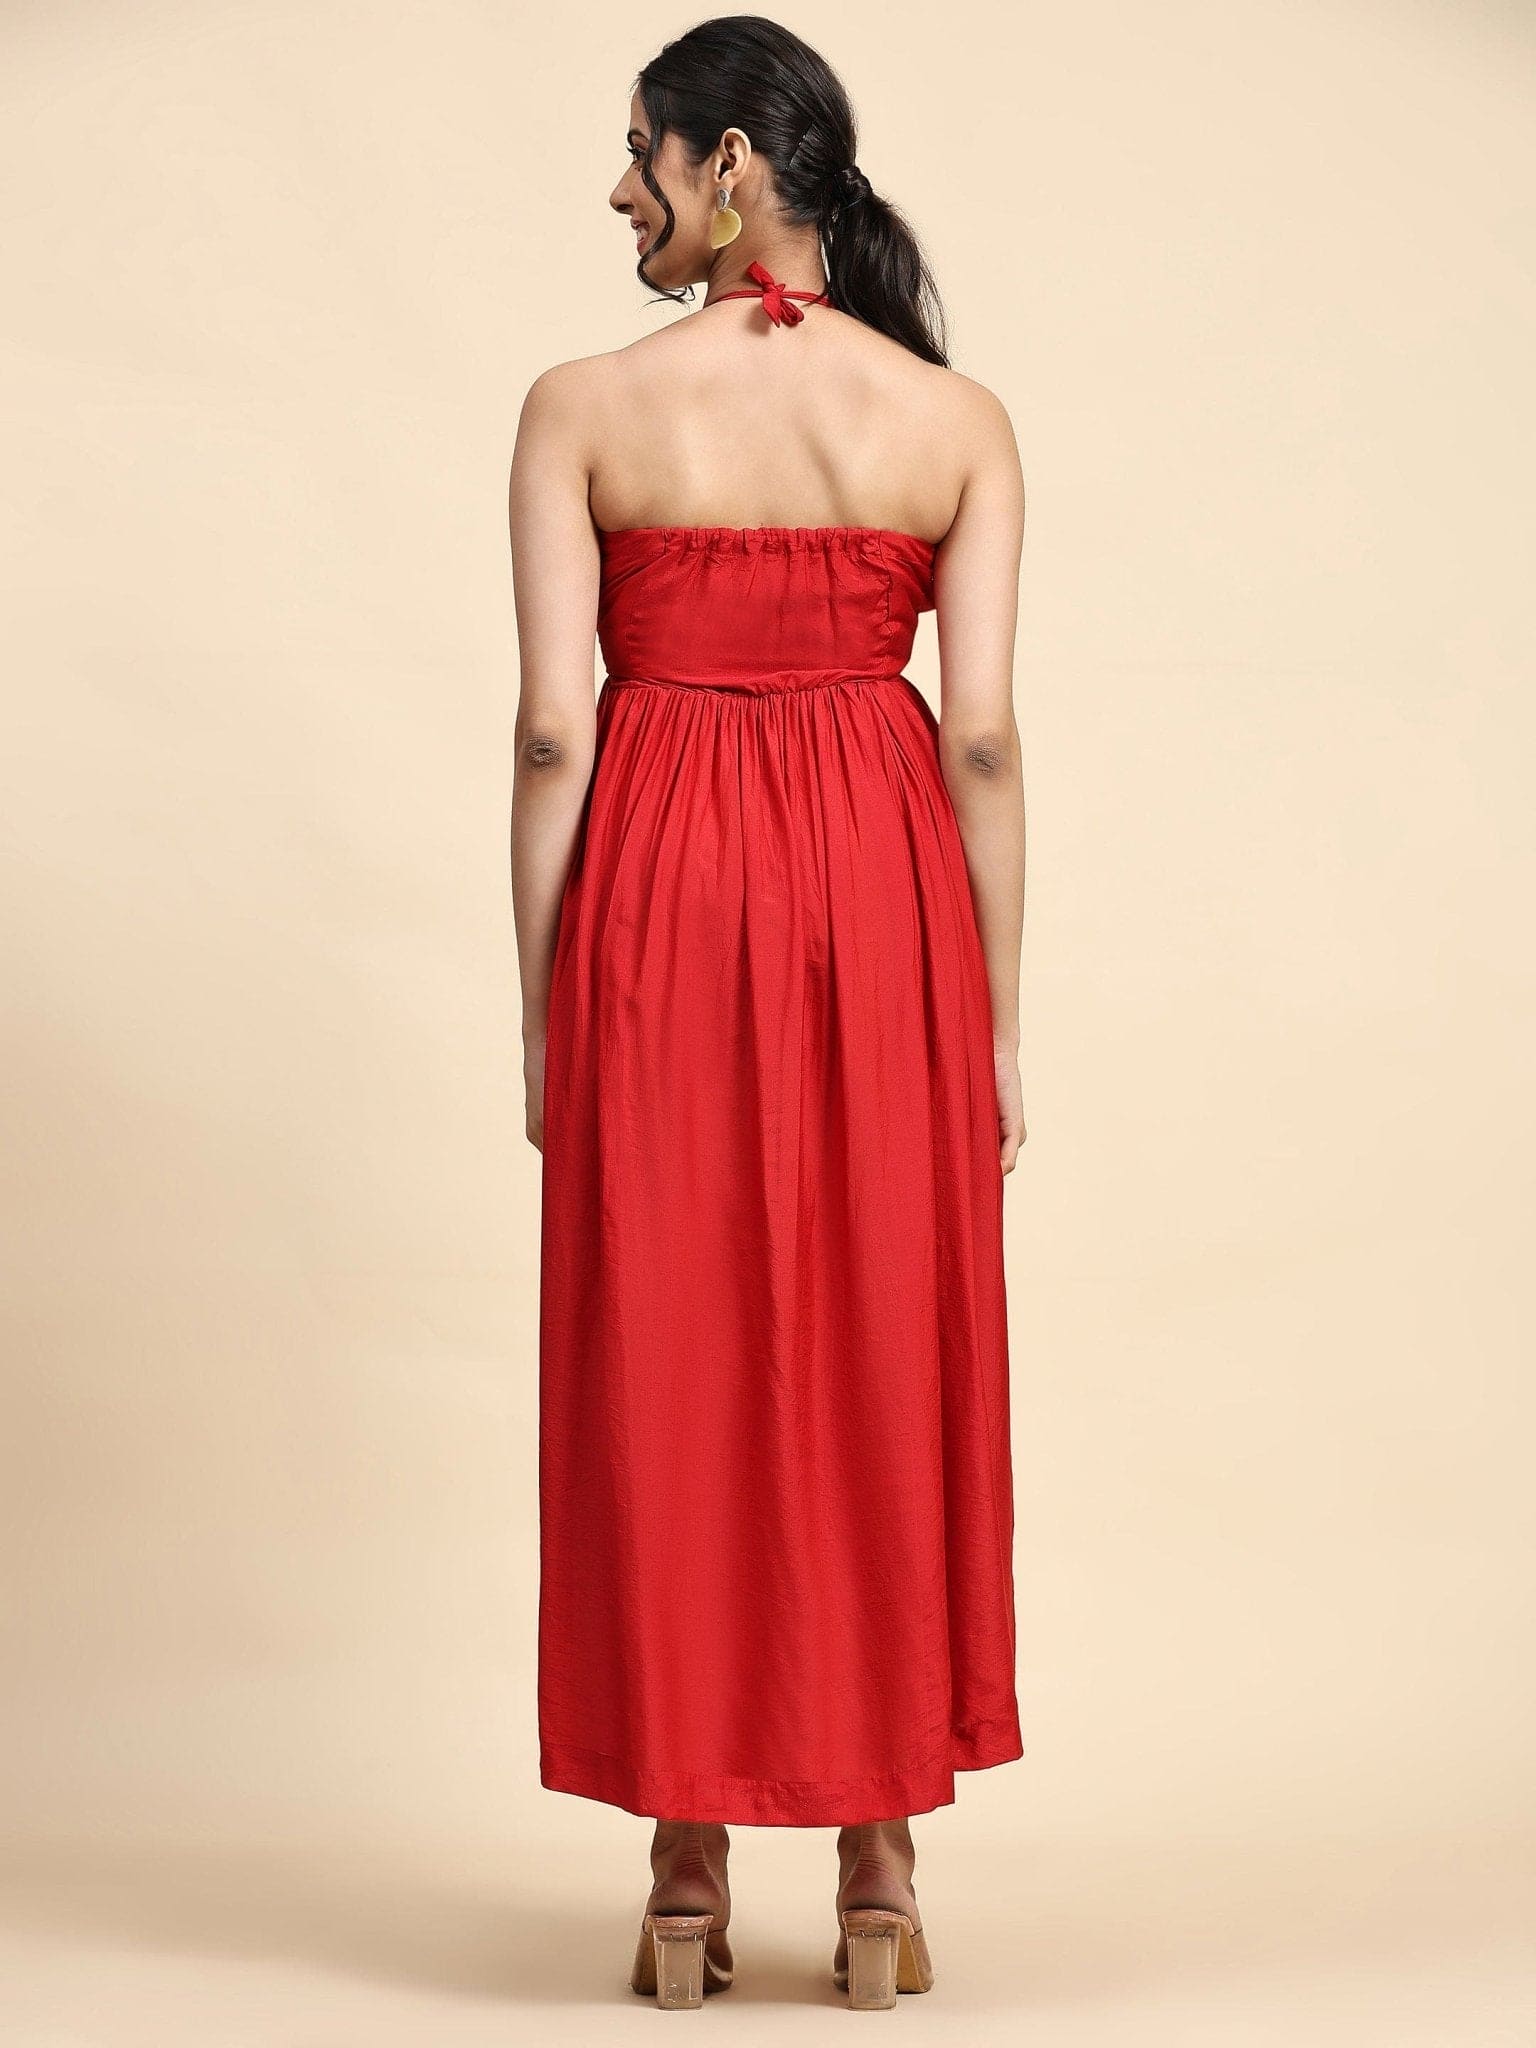 Red Zardozi Chanderi Tie Up Dress - Charkha TalesRed Zardozi Chanderi Tie Up Dress